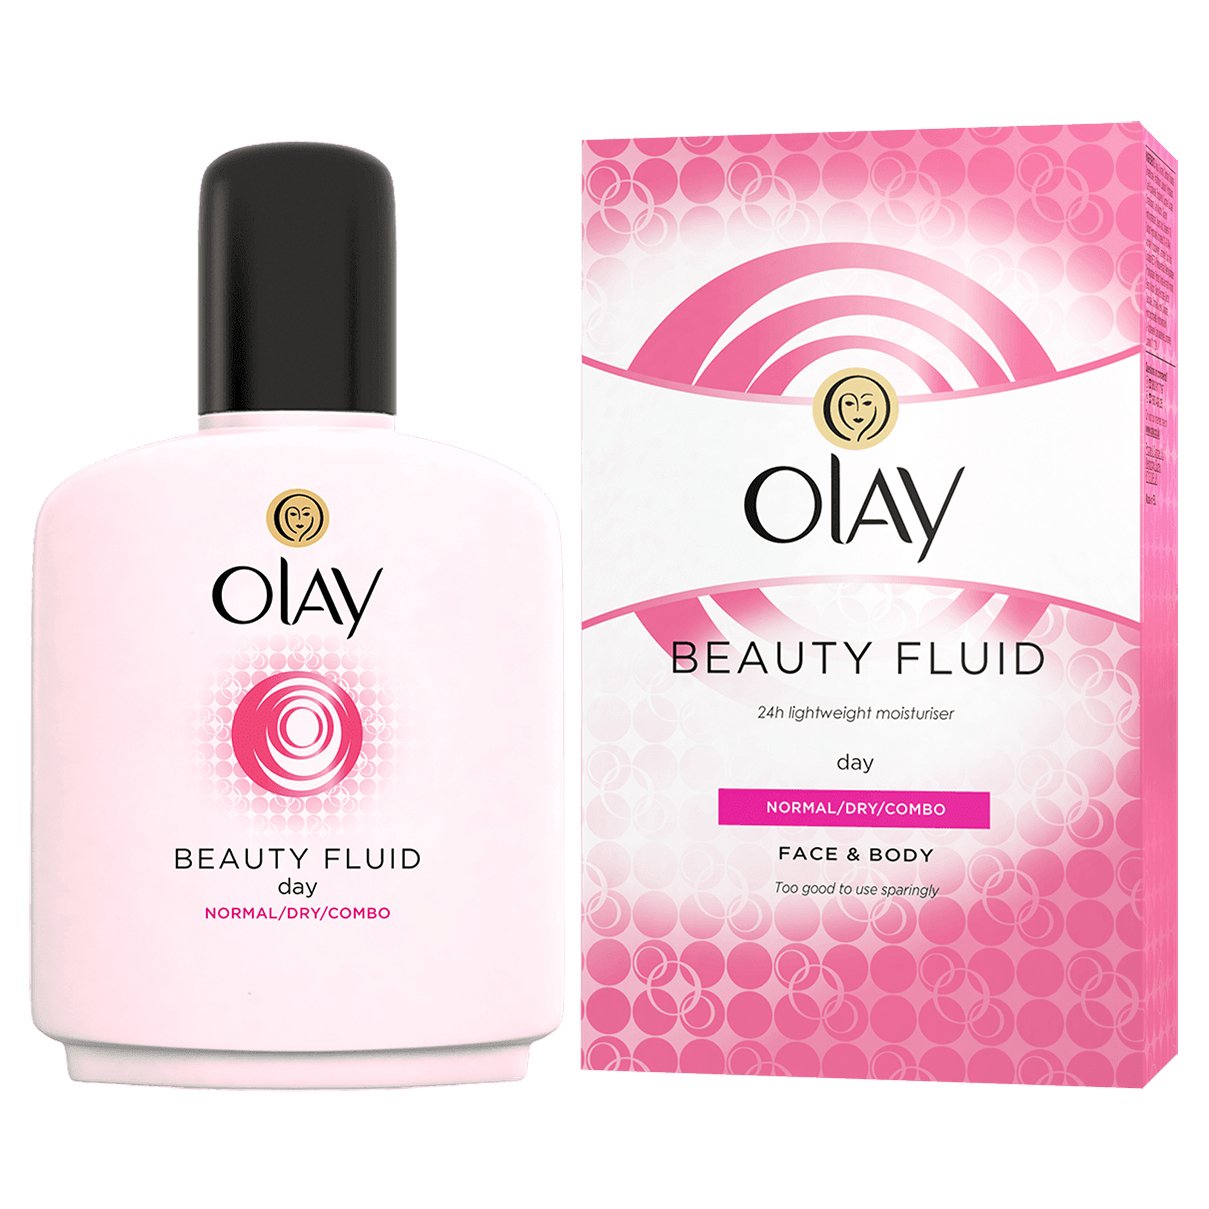 Olay Beauty Fluid Lightweight Moisturiser - Normal